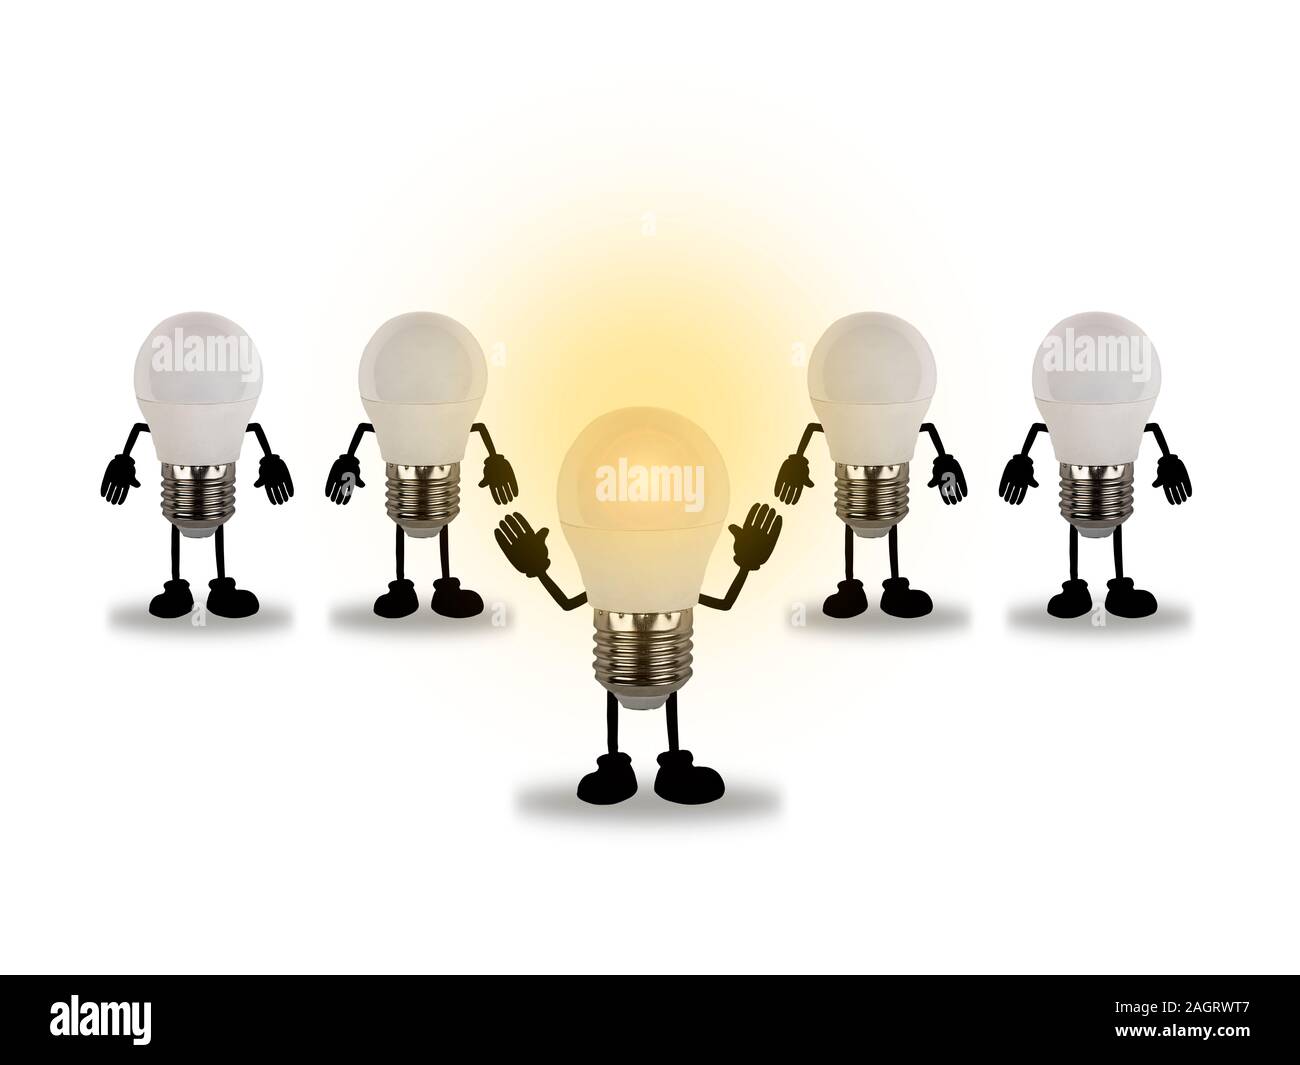 Il concetto è di idee creative. Immagine di 5 lampadine disposte in 1 tubo con luce gialla. Sono tutte su uno sfondo bianco. Foto Stock